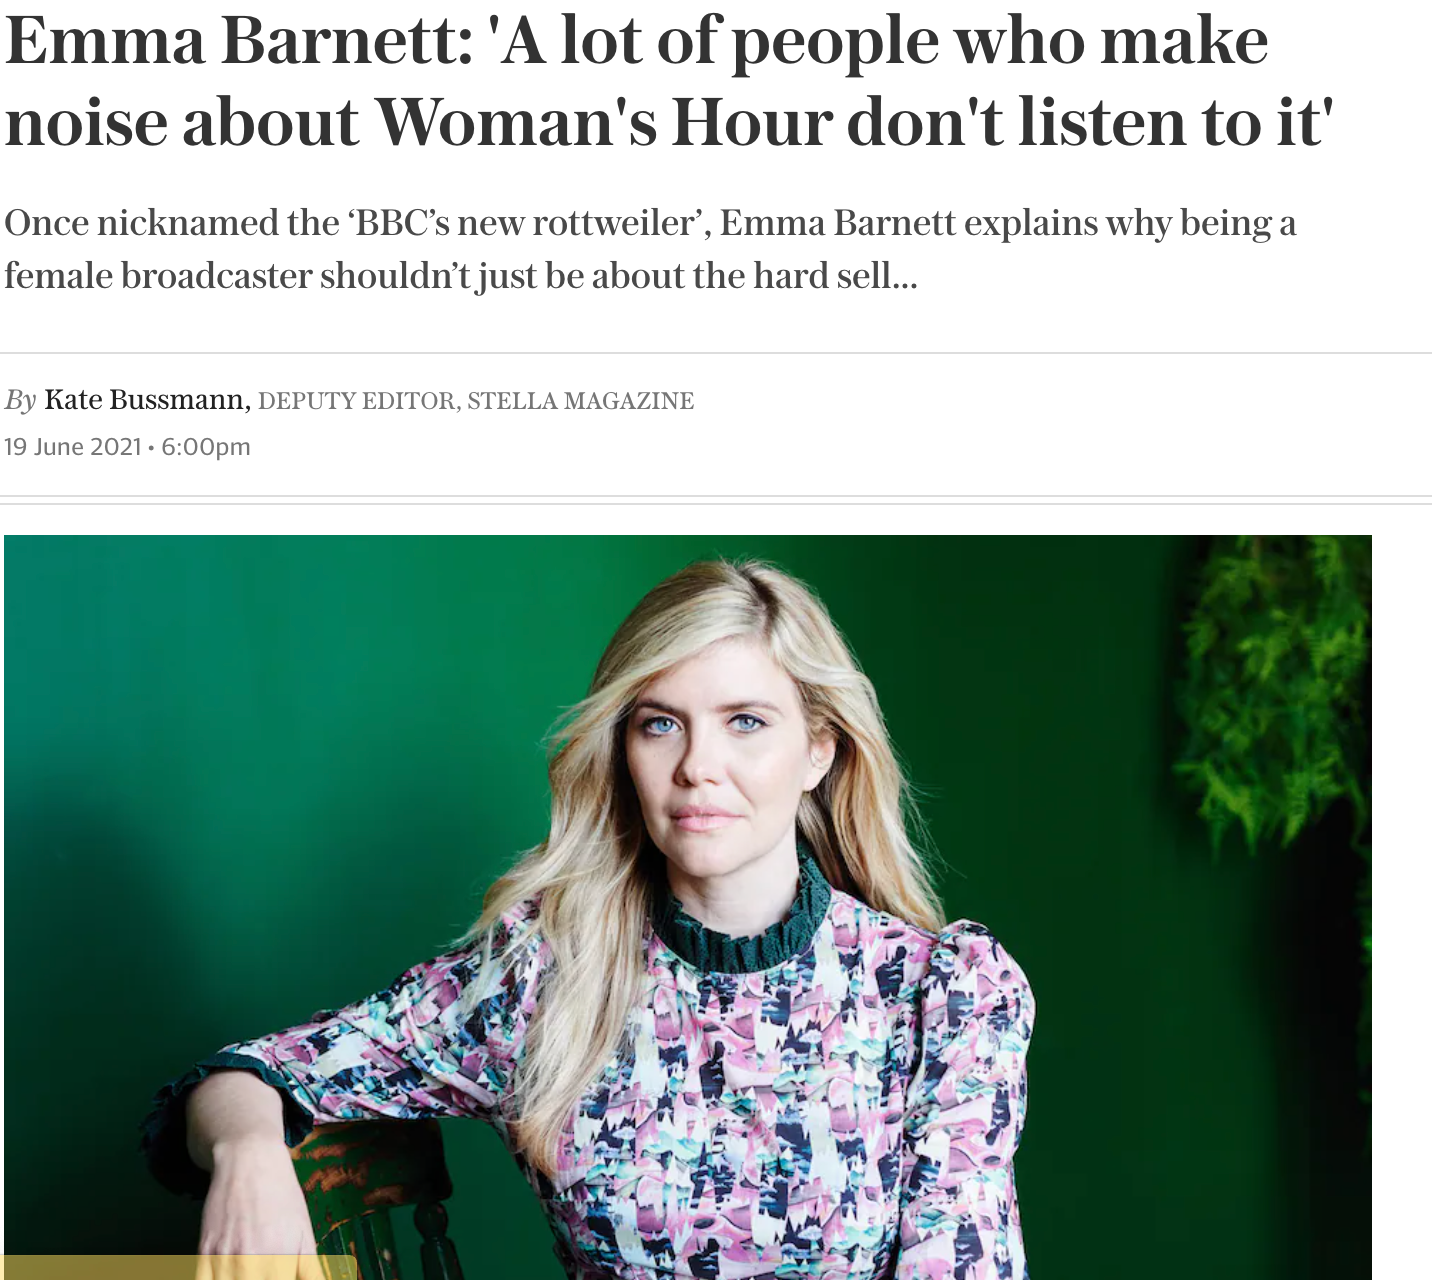 The Telegraph: An interview with Emma Barnett